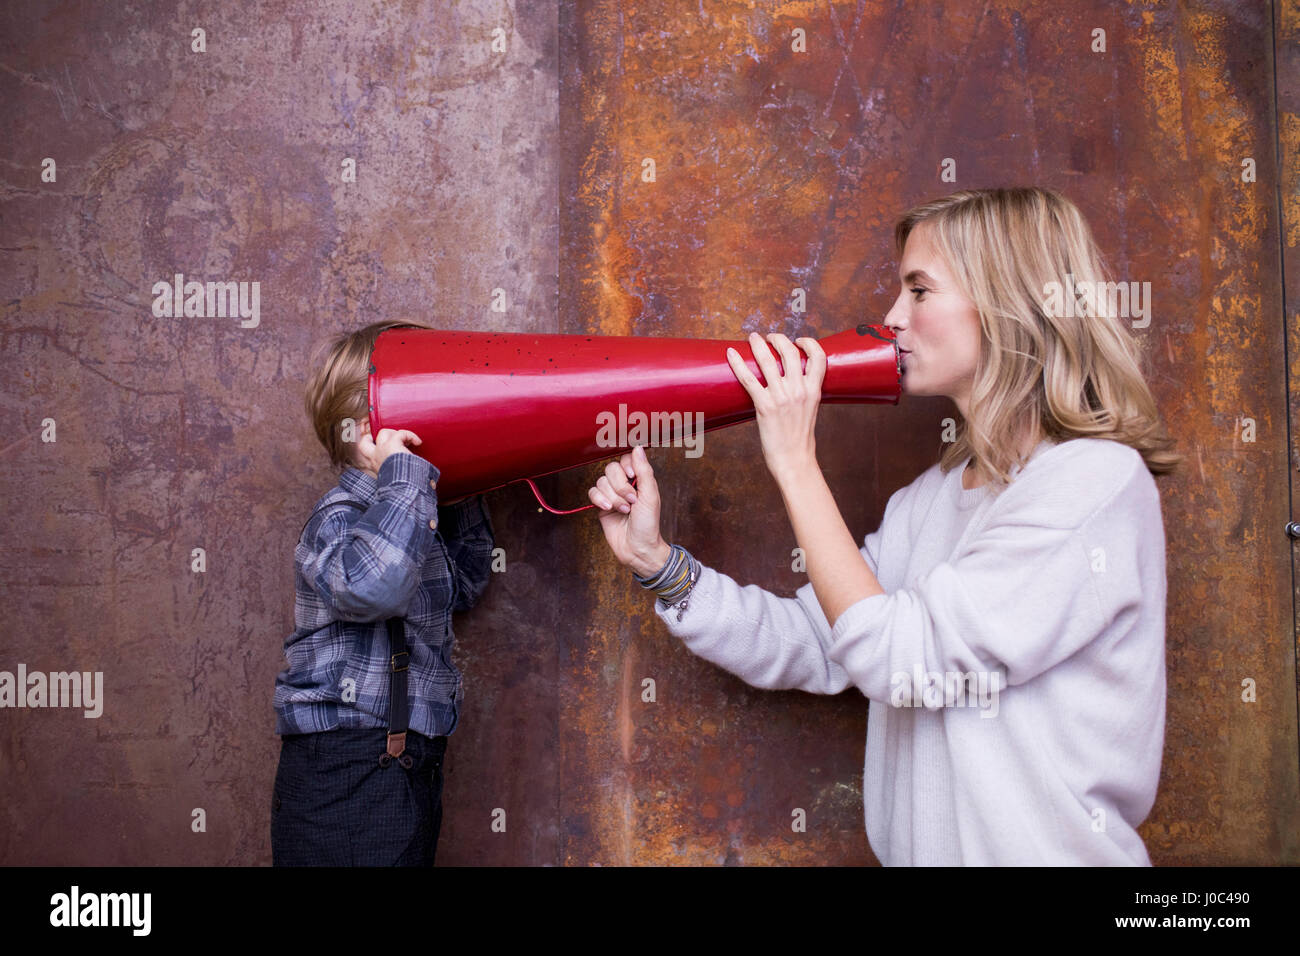 Mujer hablando en el megáfono, joven escucha, cabeza en megáfono Foto de stock